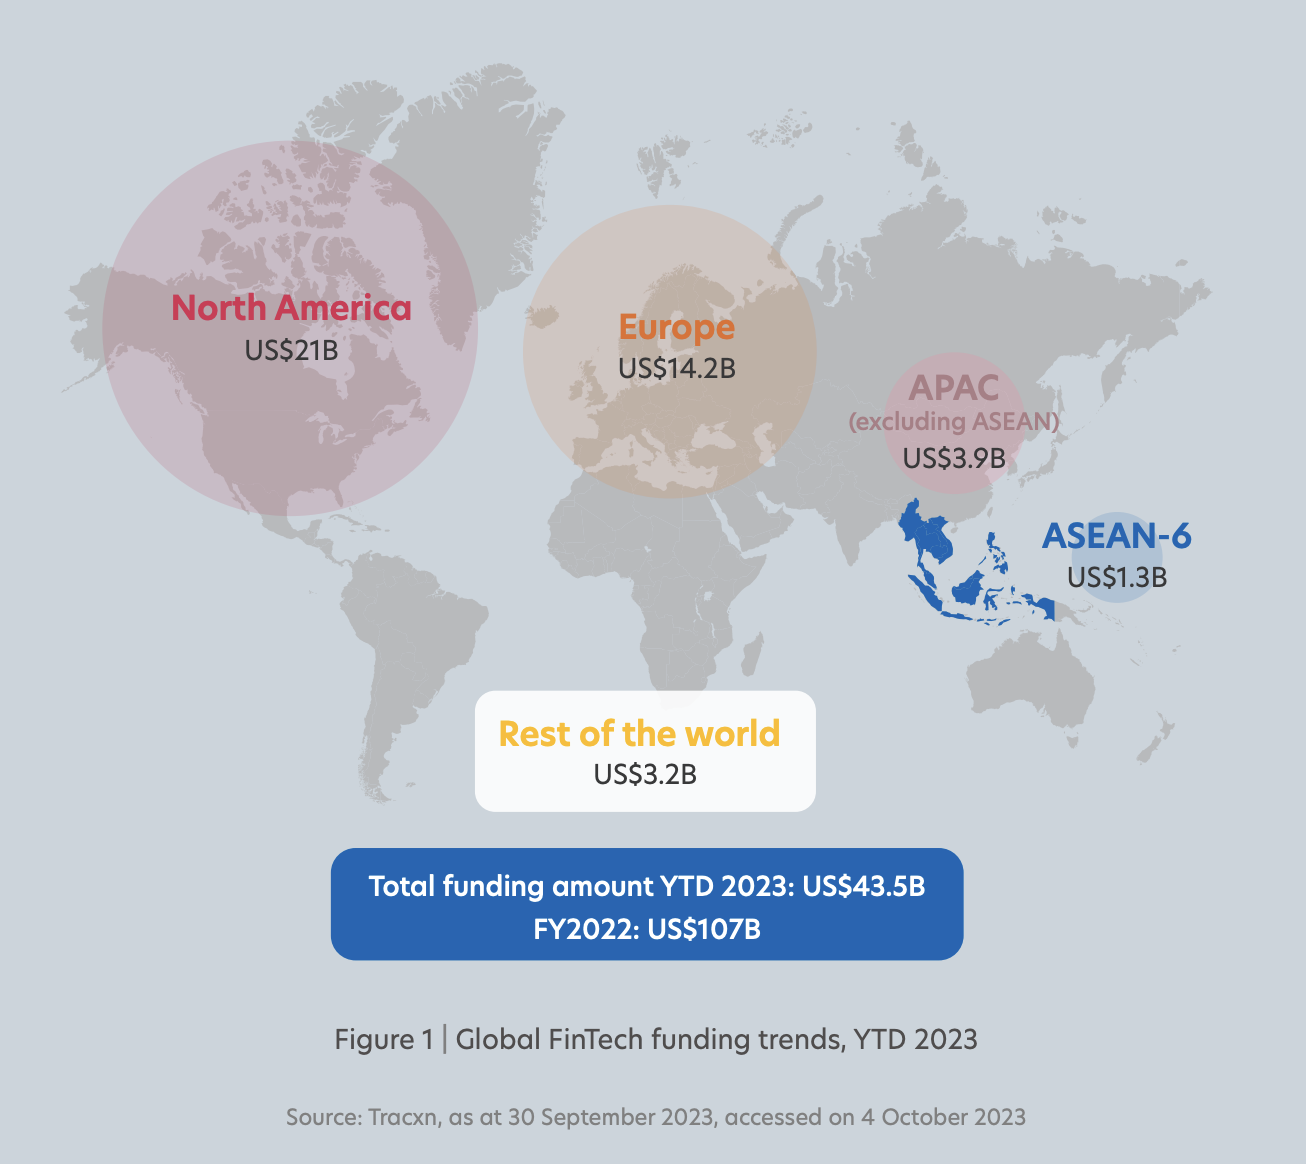 Xu hướng tài trợ Finrech toàn cầu, đầu năm 2023, Nguồn: Fintech ở ASEAN 2023: Gieo mầm cho quá trình chuyển đổi xanh, UOB, PwC Singapore và Hiệp hội Fintech Singapore (SFA), tháng 2023 năm XNUMX